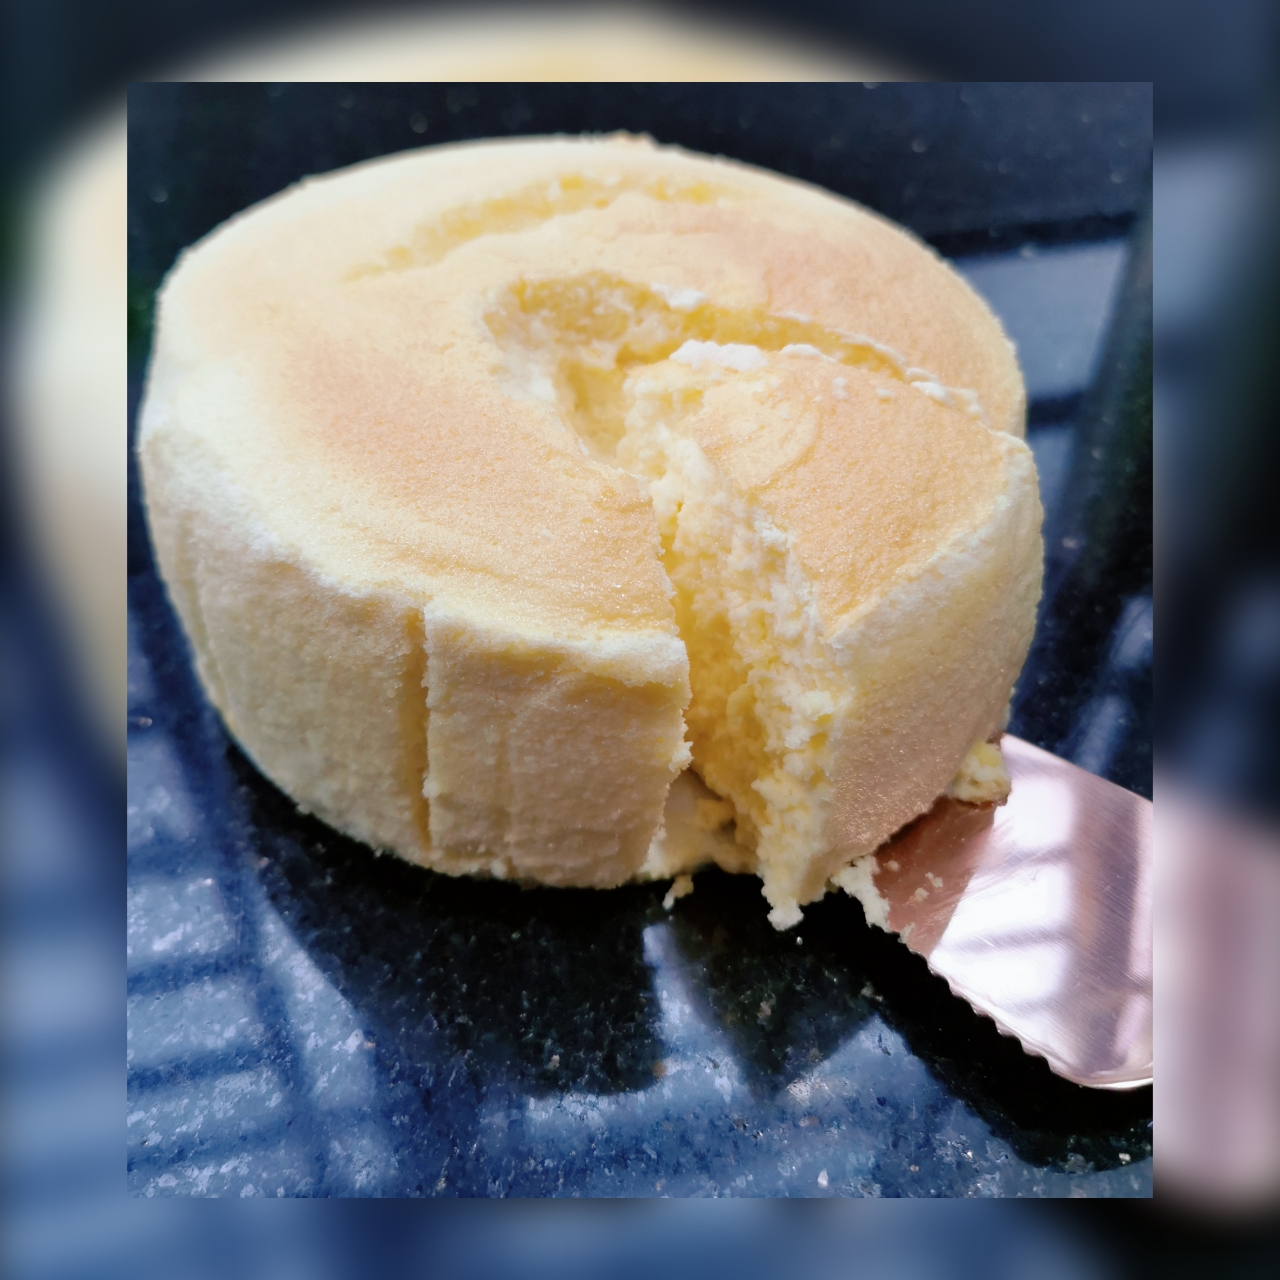 日式轻乳酪蛋糕 - Uncle Tetsu Japanese Cheesecake的做法